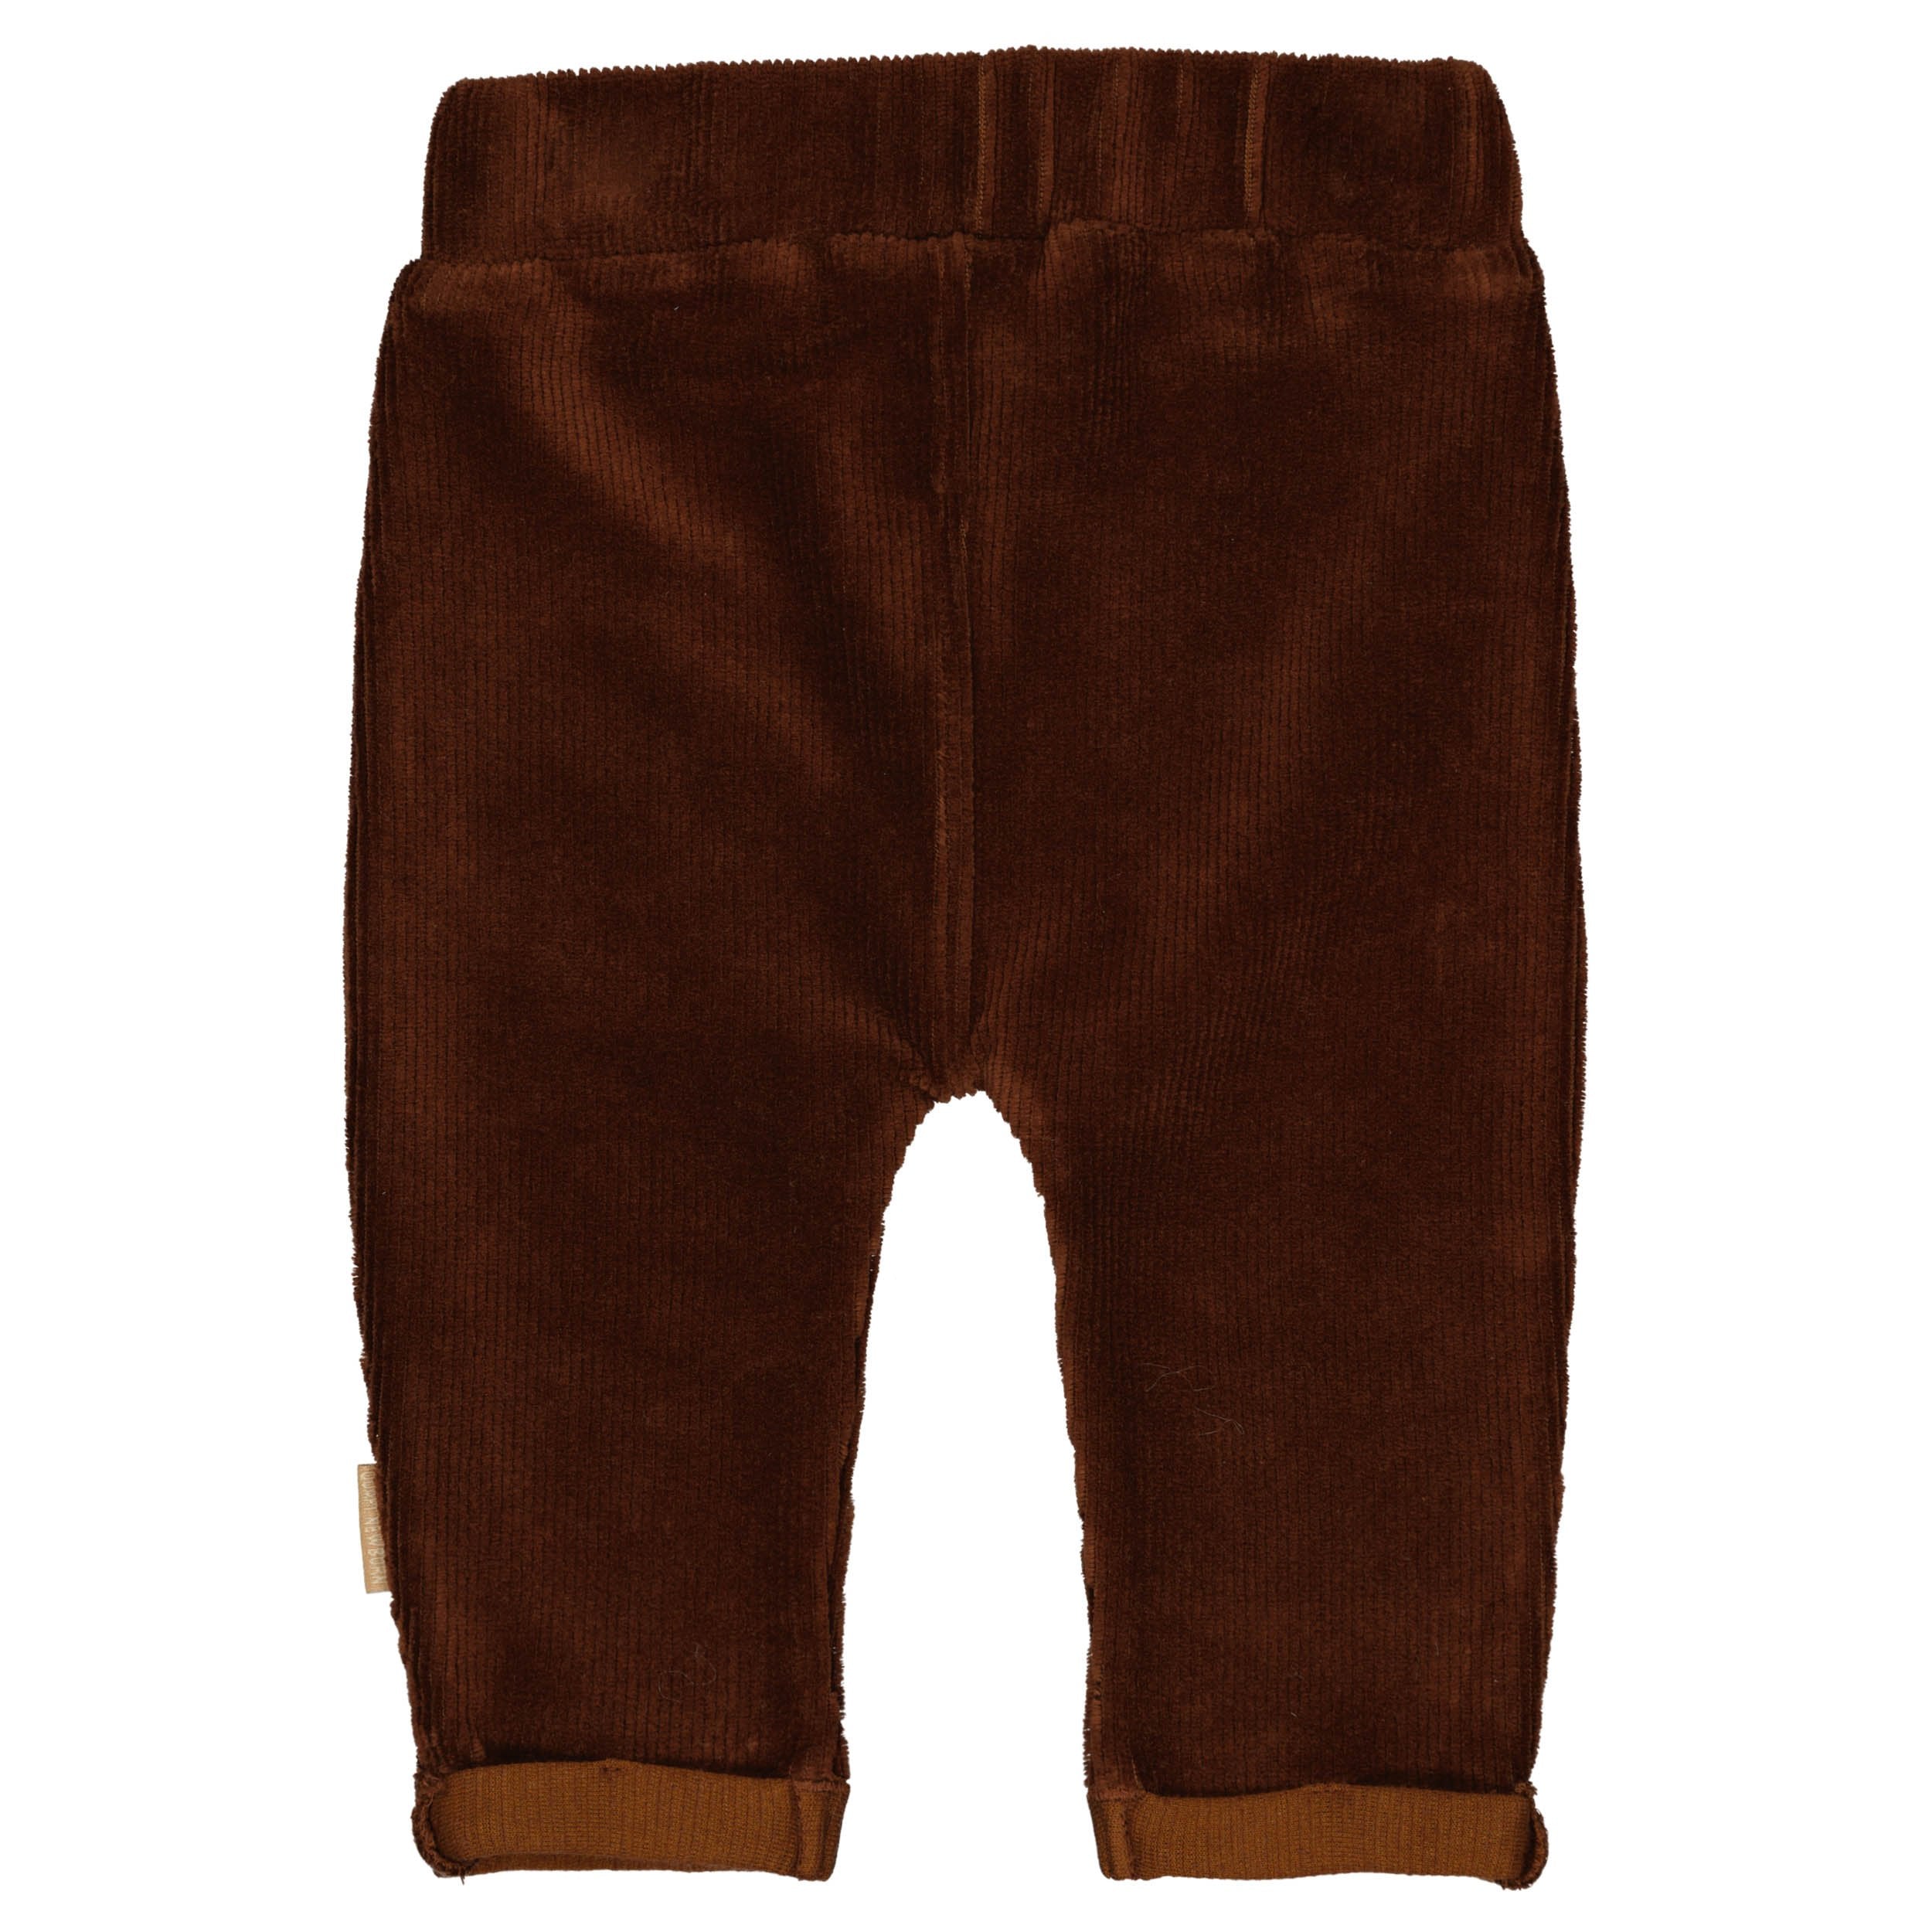 Jongens Pants MEX NBW21 van Quapi Newborn in de kleur Brown Choco in maat 68.